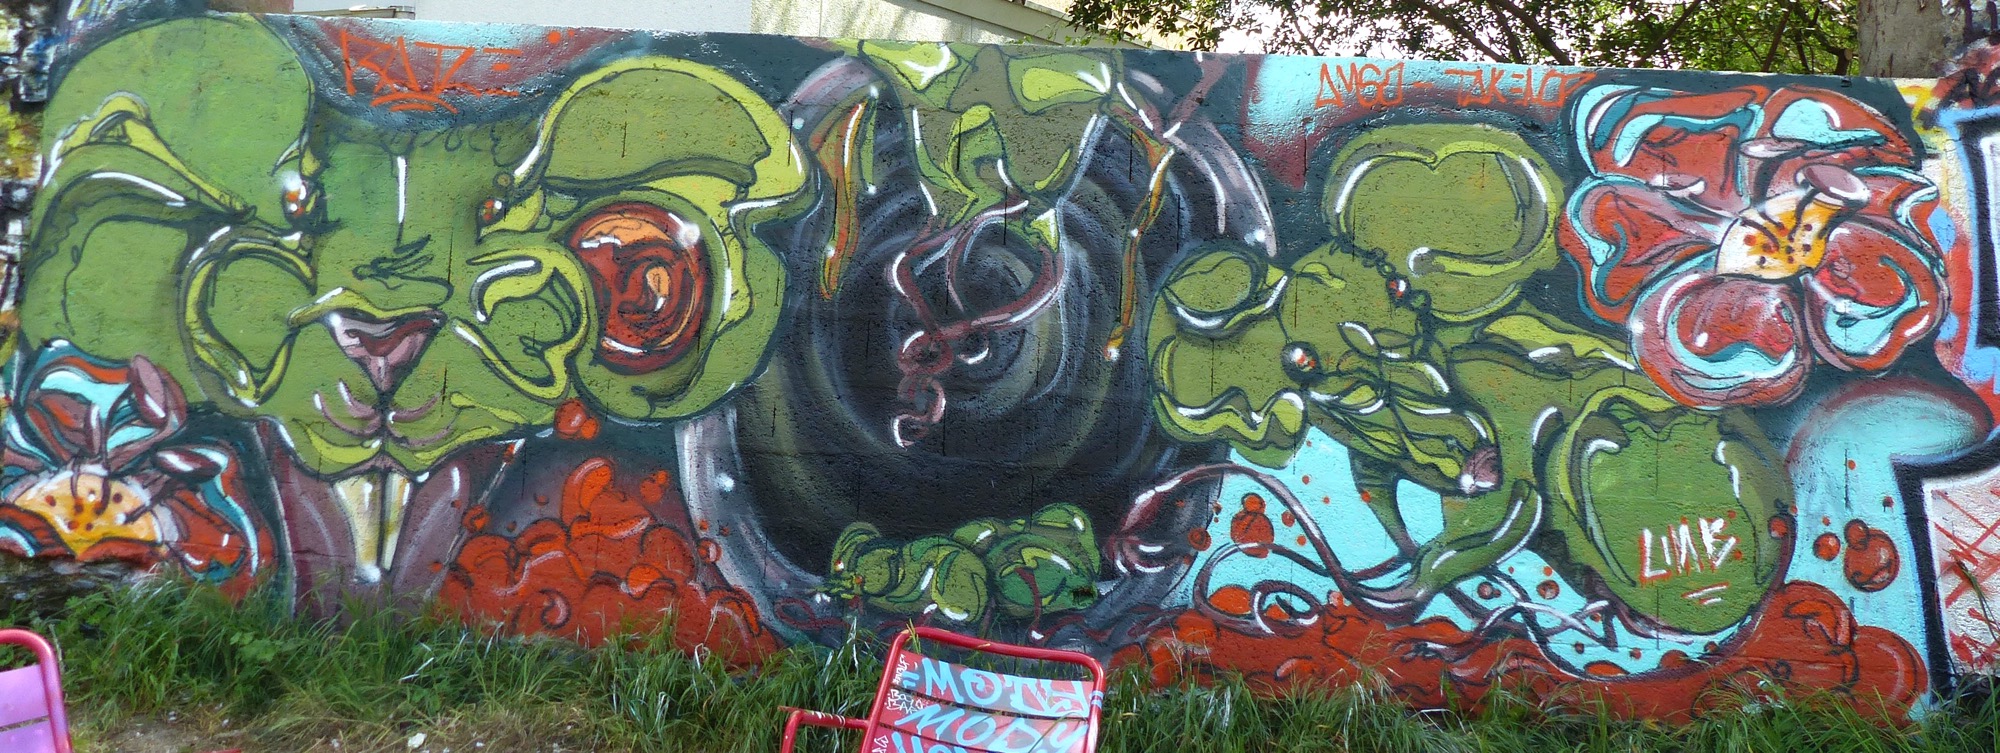 Graffiti 59  capturé par Rabot à Nantes France